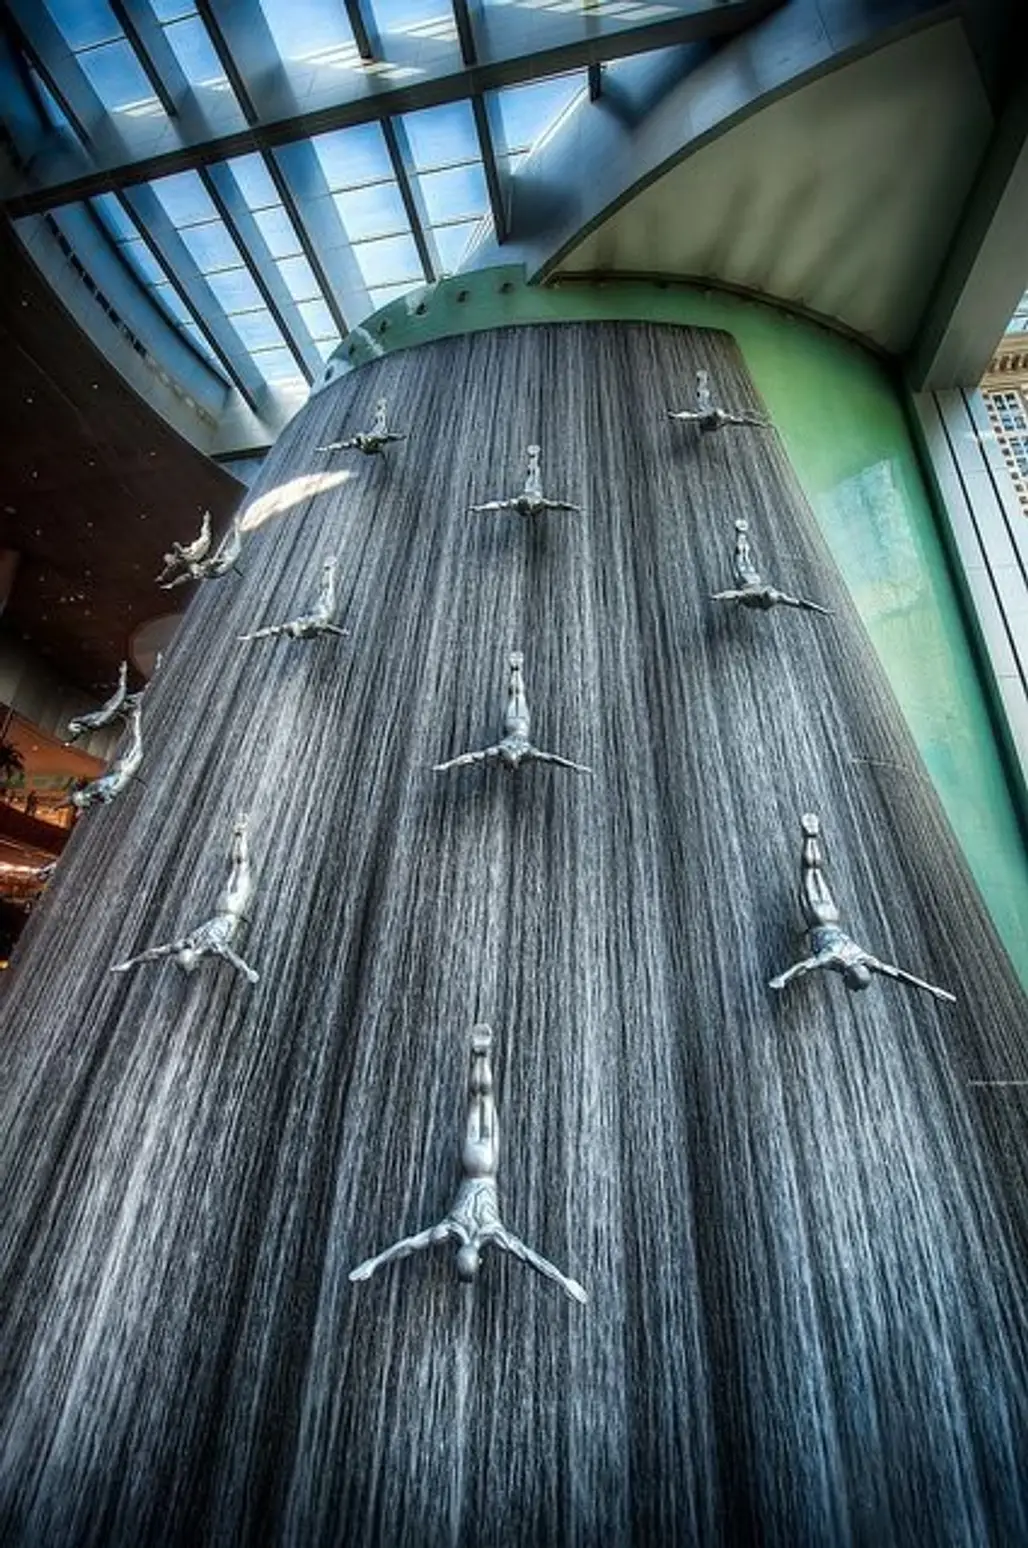 The High Dive - Dubai Mall